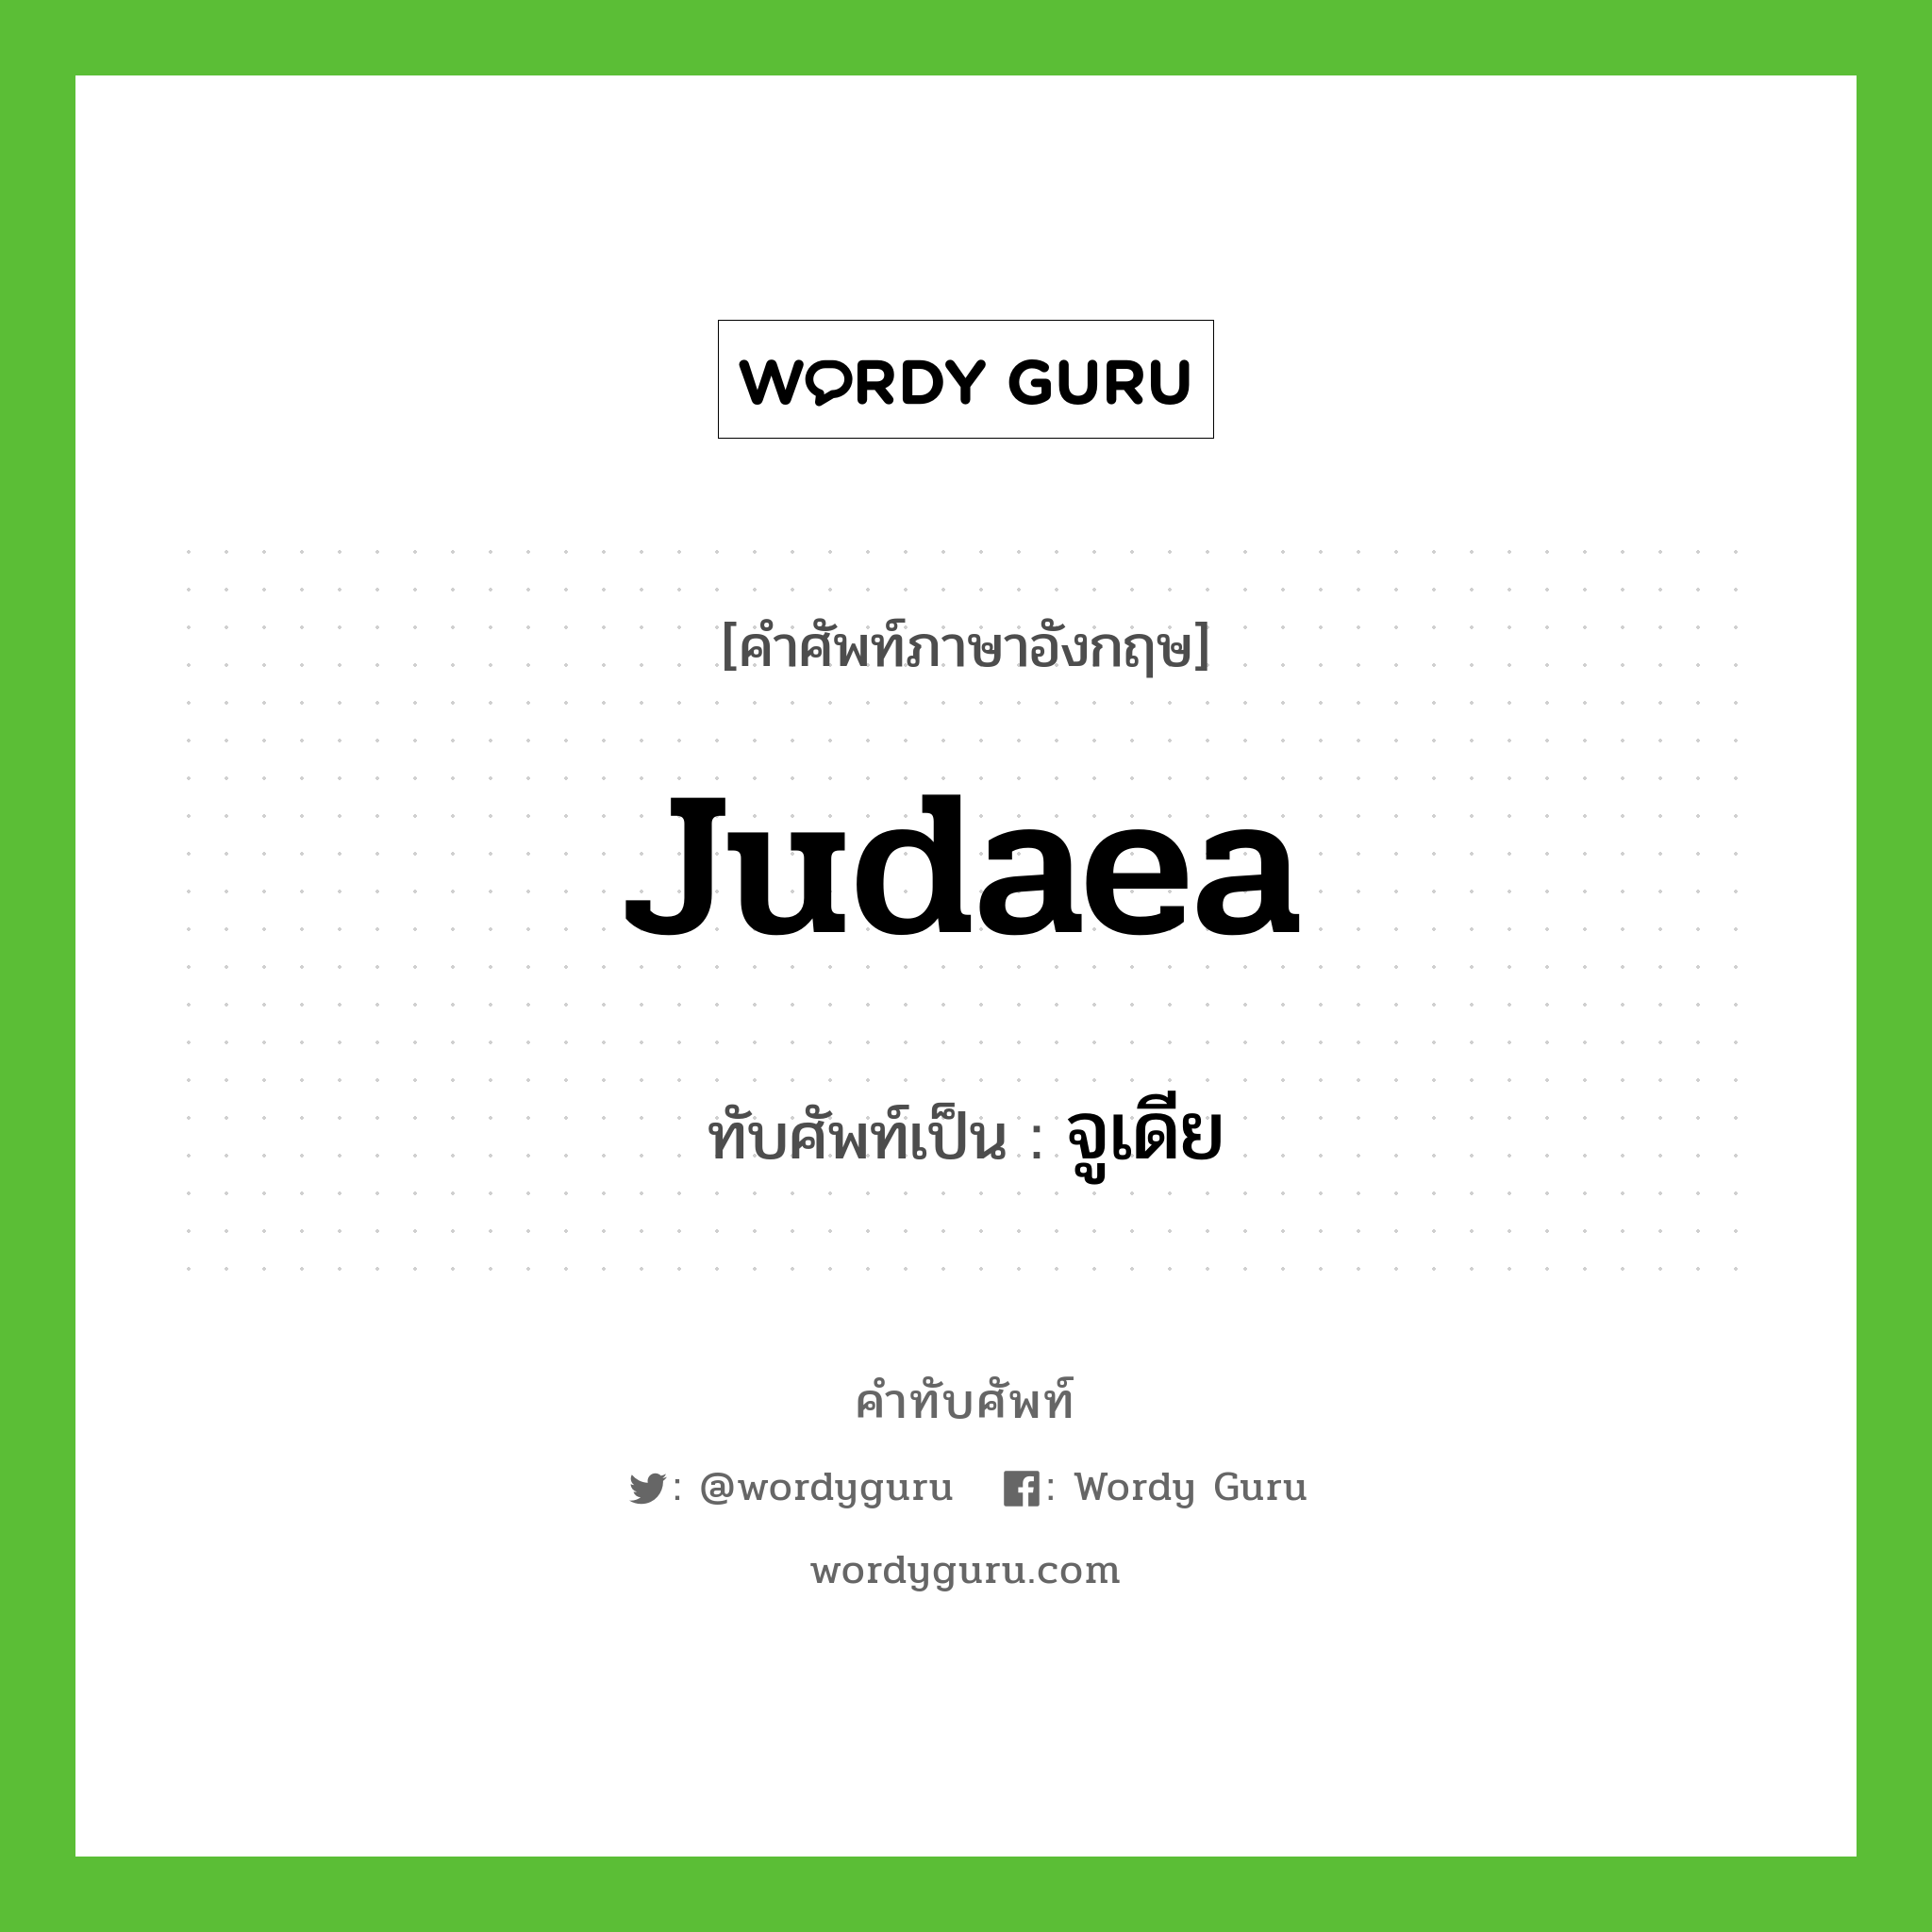 Judaea เขียนเป็นคำไทยว่าอะไร?, คำศัพท์ภาษาอังกฤษ Judaea ทับศัพท์เป็น จูเดีย